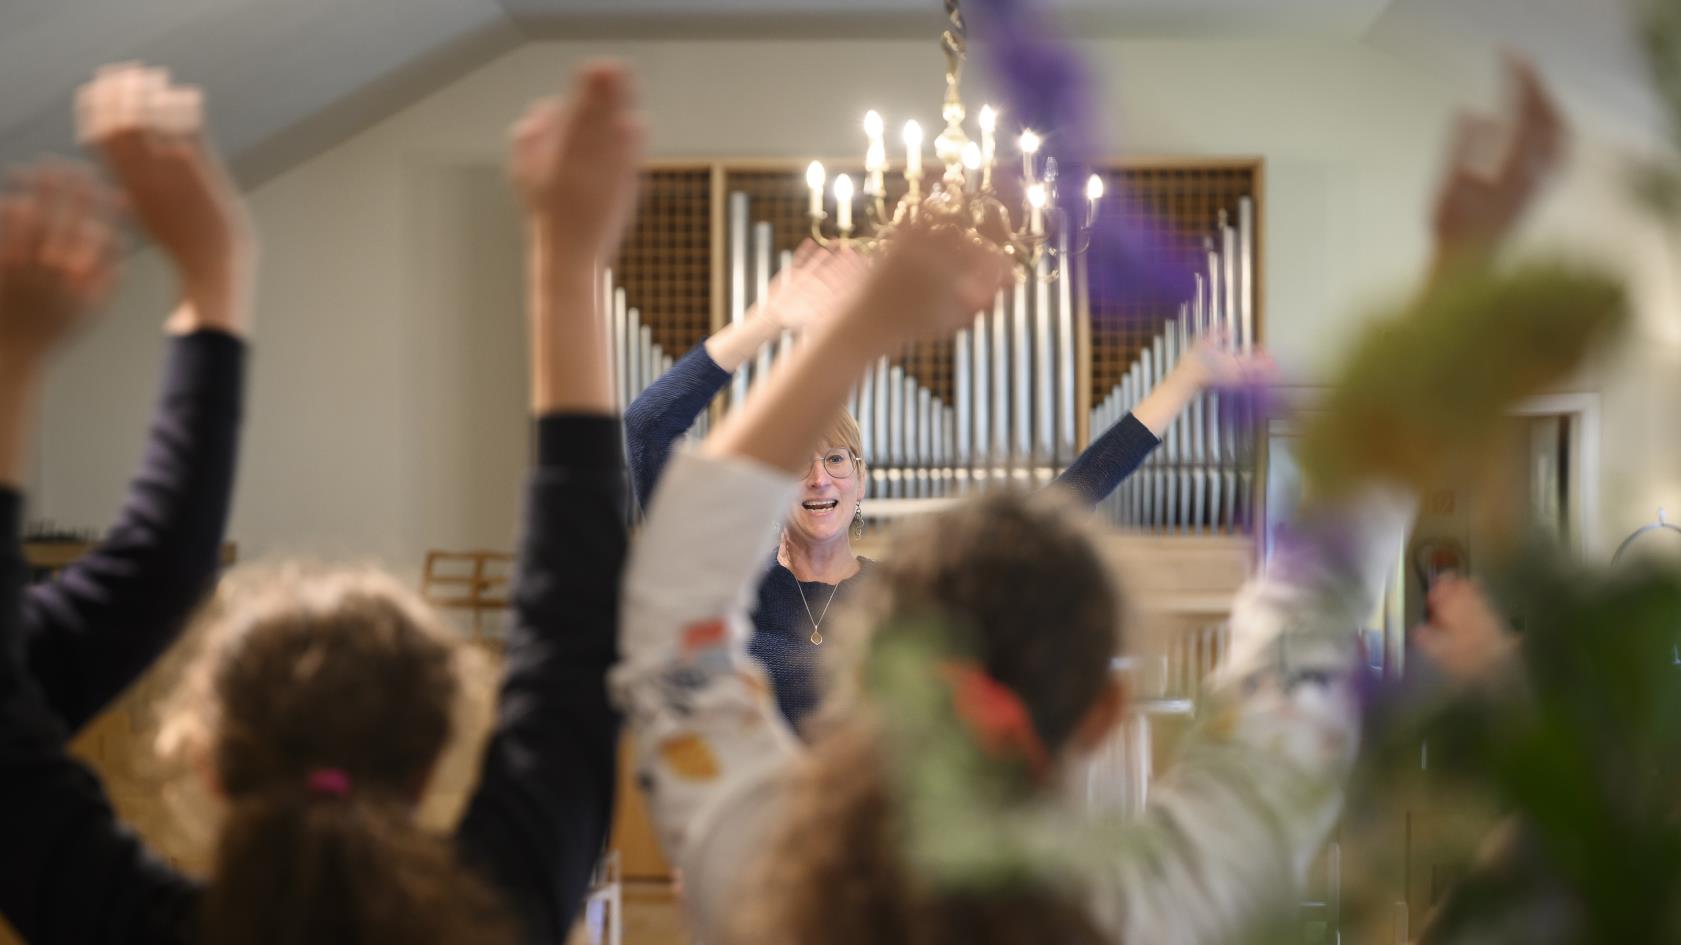 Några ungdomar står i en kyrka och viftar med armarna i luften. En kvinna står framför dem och gör likadant.